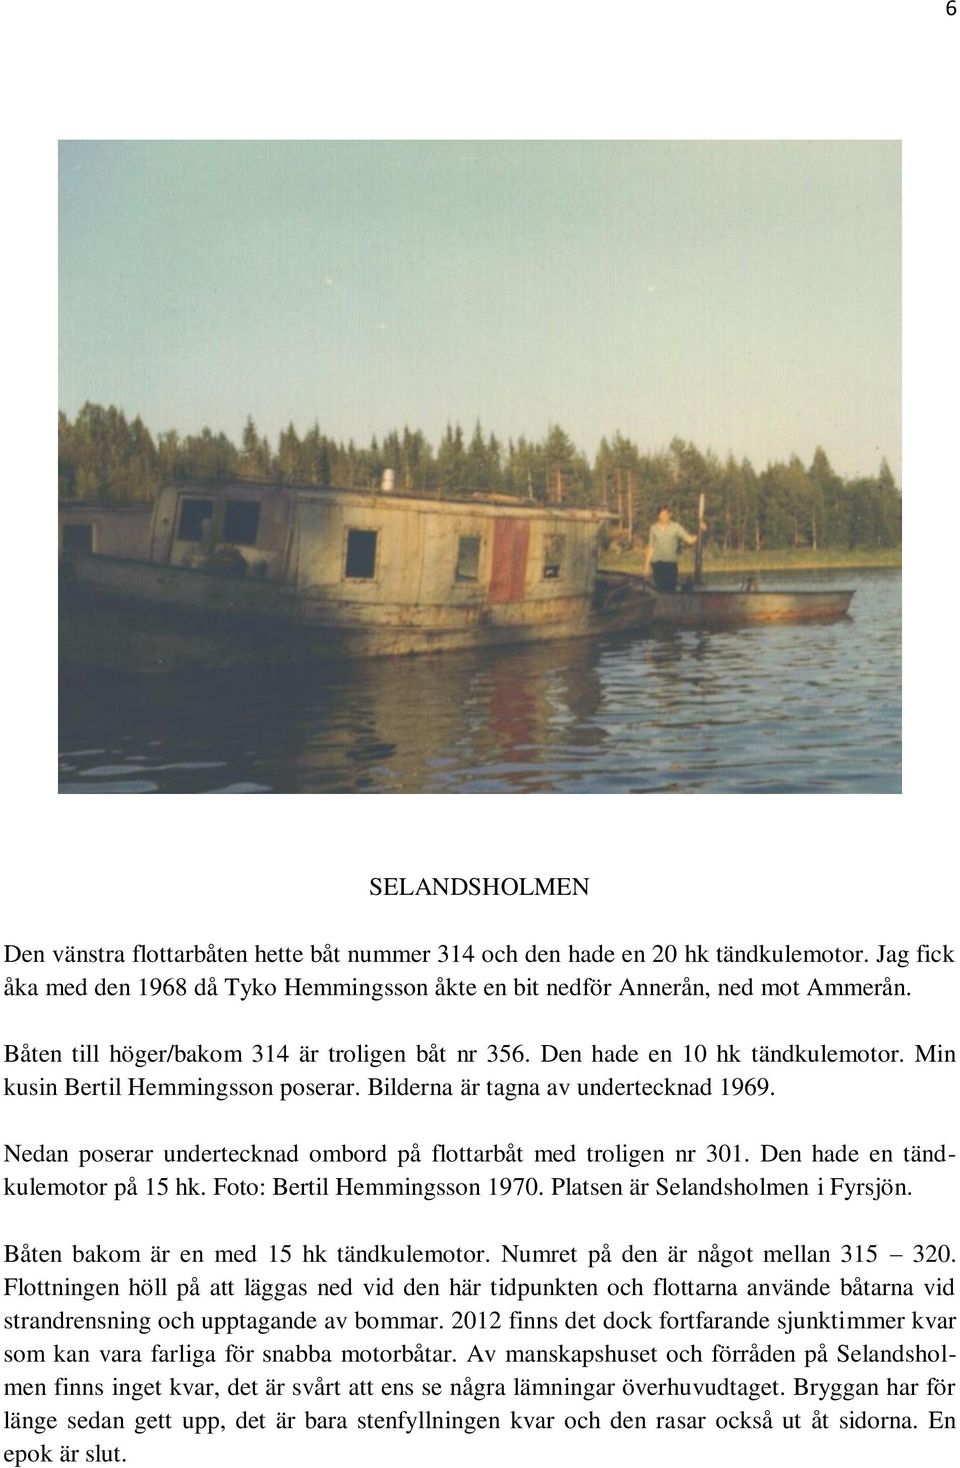 Nedan poserar undertecknad ombord på flottarbåt med troligen nr 301. Den hade en tändkulemotor på 15 hk. Foto: Bertil Hemmingsson 1970. Platsen är Selandsholmen i Fyrsjön.